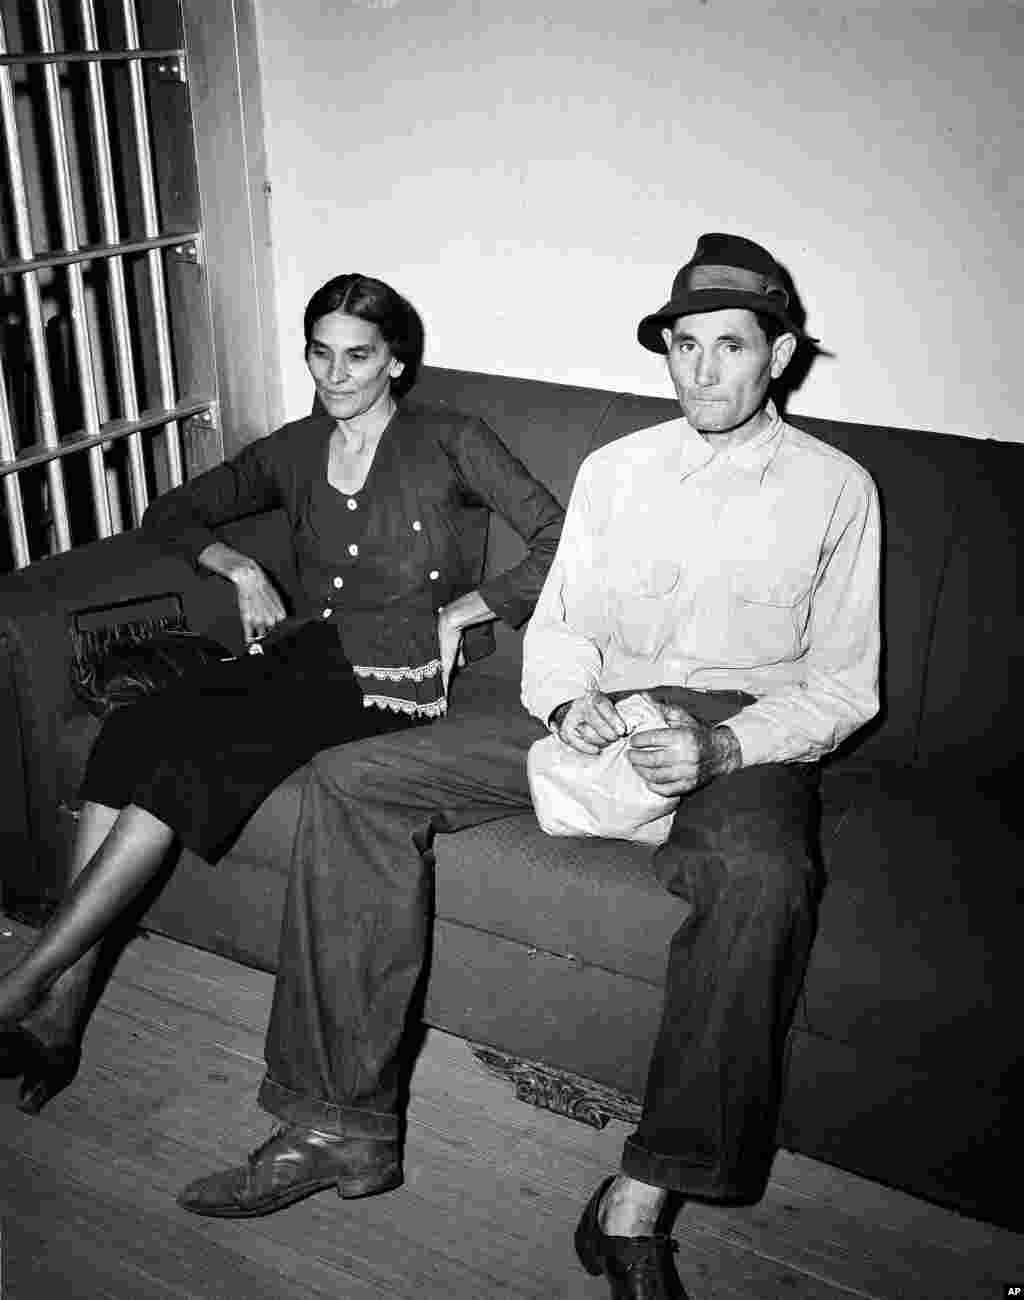 امروز در تاریخ: دستگیری جورج وایت و همسرش دالی در ایالت جورجیا در سال ۱۹۴۹. آنها به دلیل غیر قانونی بودن ازدواج بین یک سفید پوست و یک سیاه پوست دستگیر شده بوده اند.